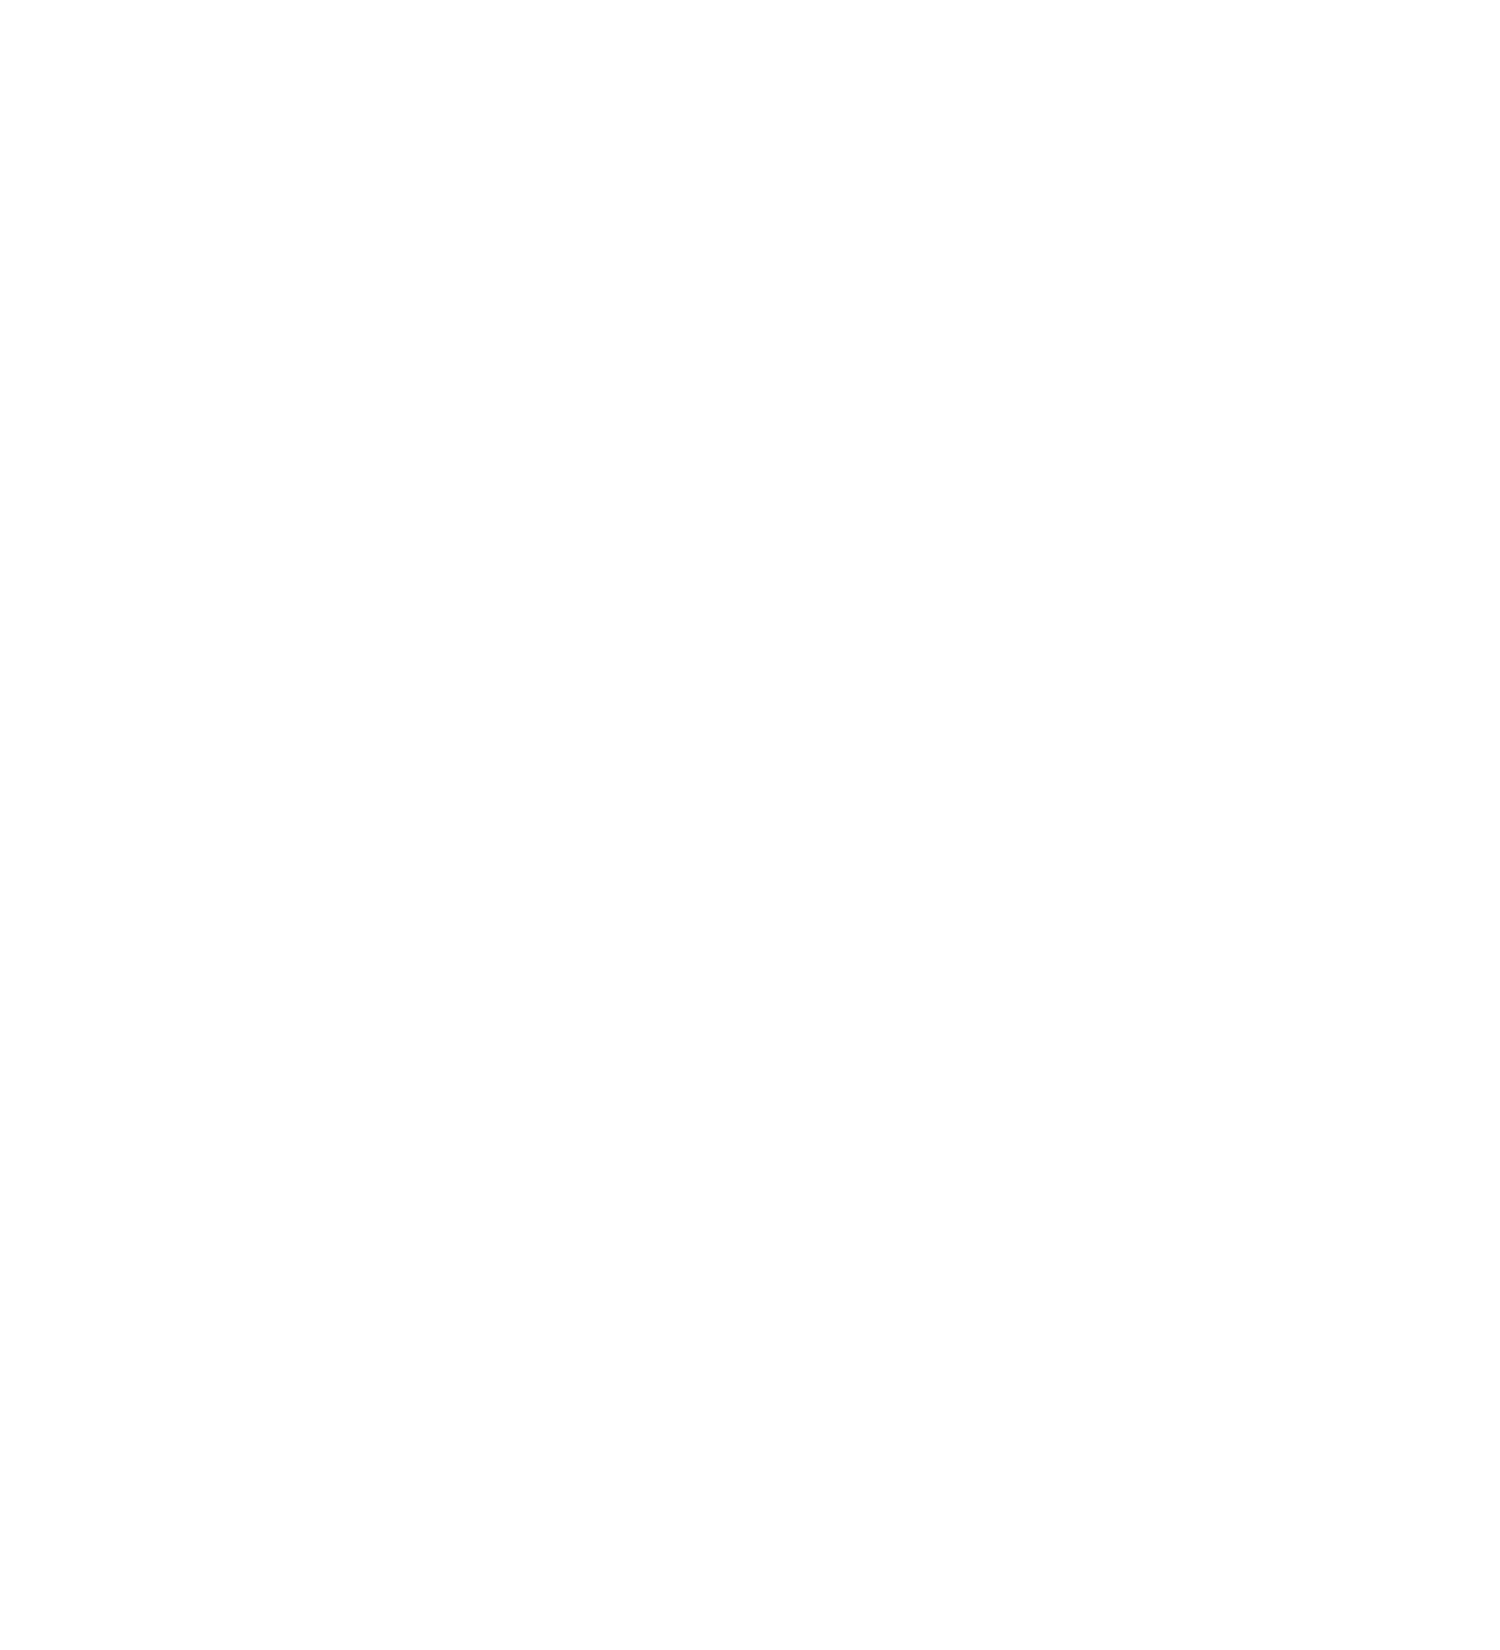 Microvast logo pour fonds sombres (PNG transparent)